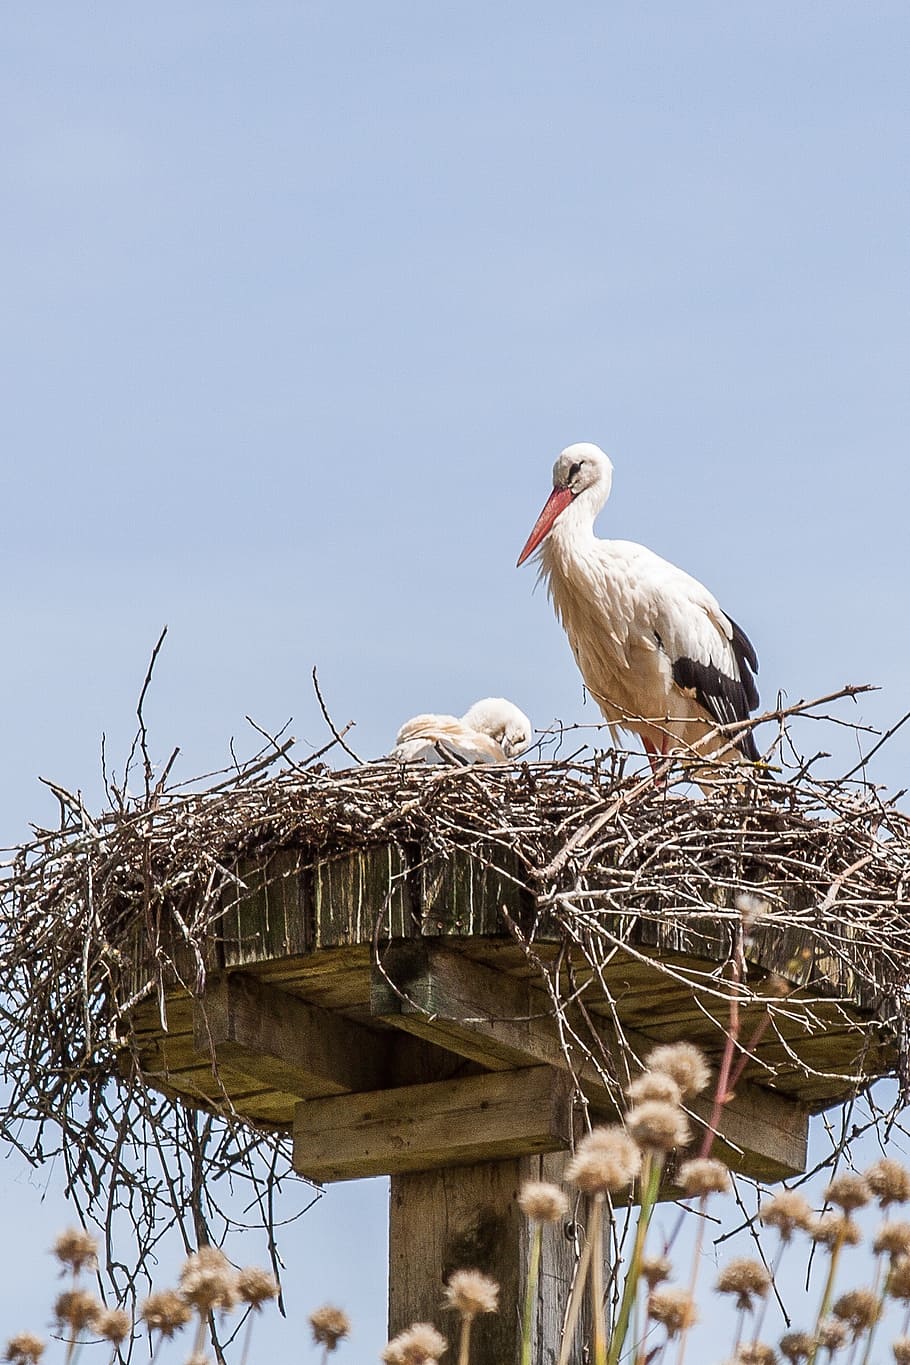 stork, nest, storchennest, breed, adebar, rattle stork, bird, animal Nest, white Stork, wildlife